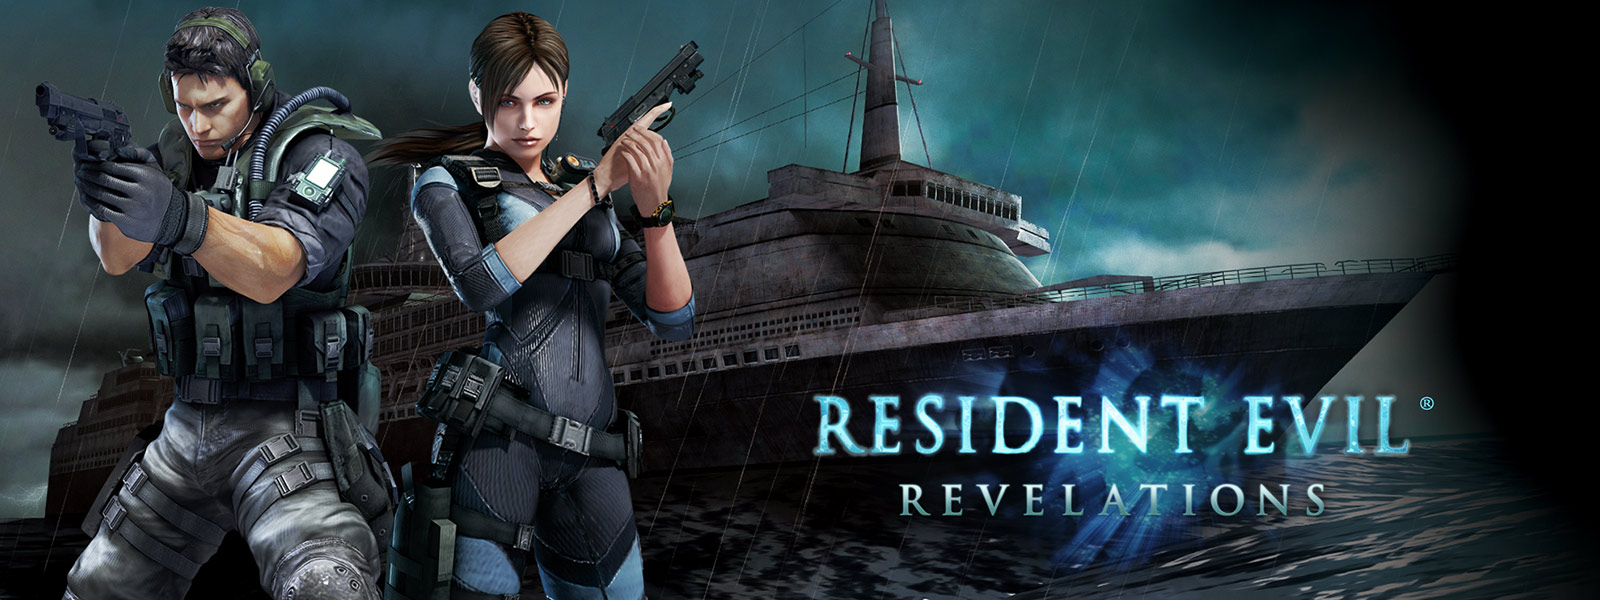 Resident Evil Revelations, dwie postacie z gry trzymające pistolety na tle upiornego wycieczkowca